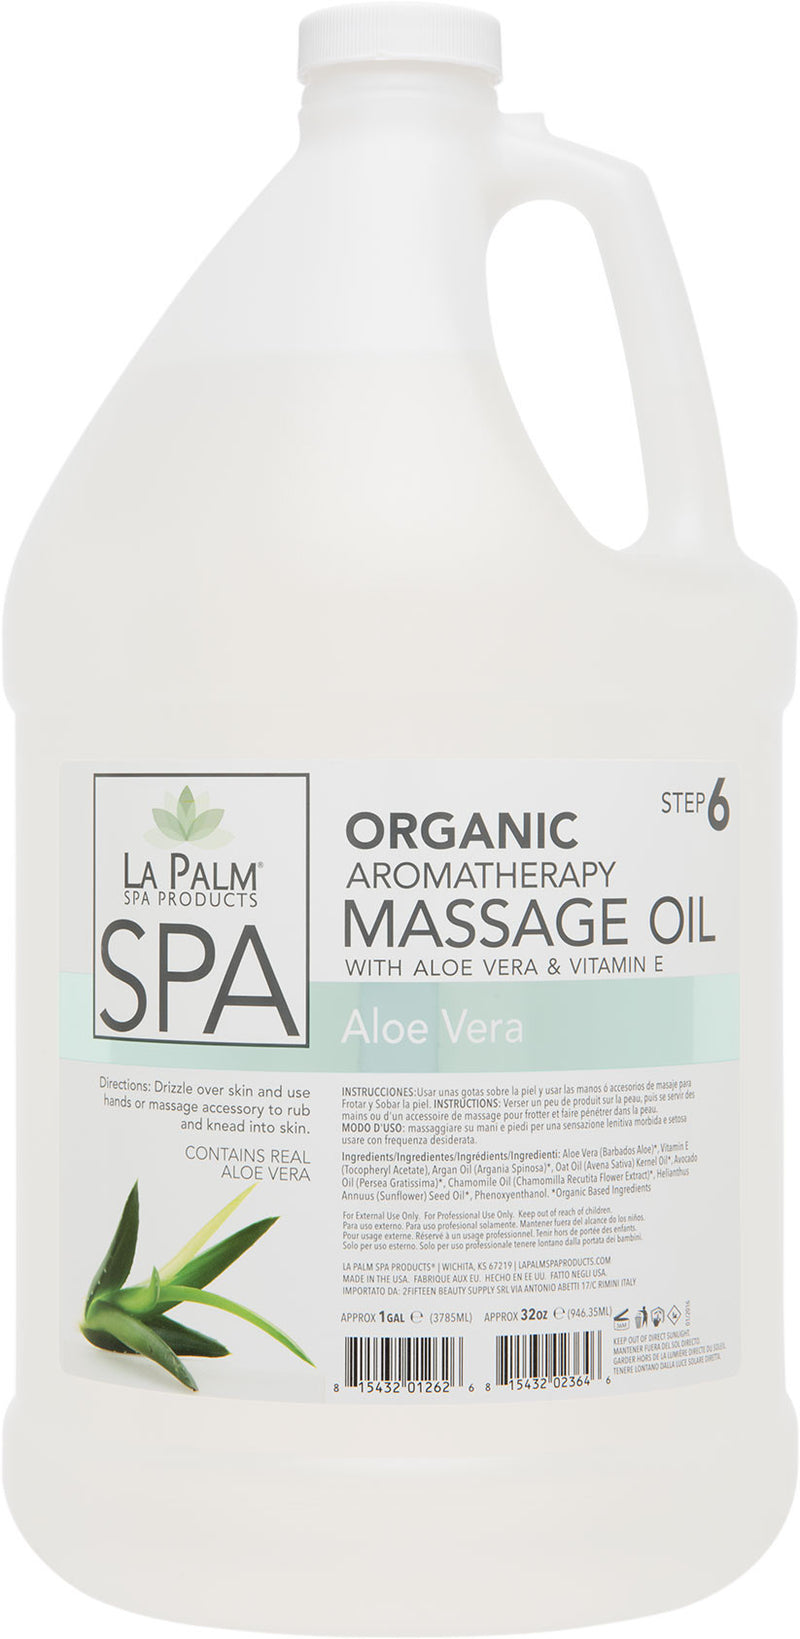 La Palm - Organic Aromatherapy Massage Oil Aloe Vera & Vitamin E 1 Gallon